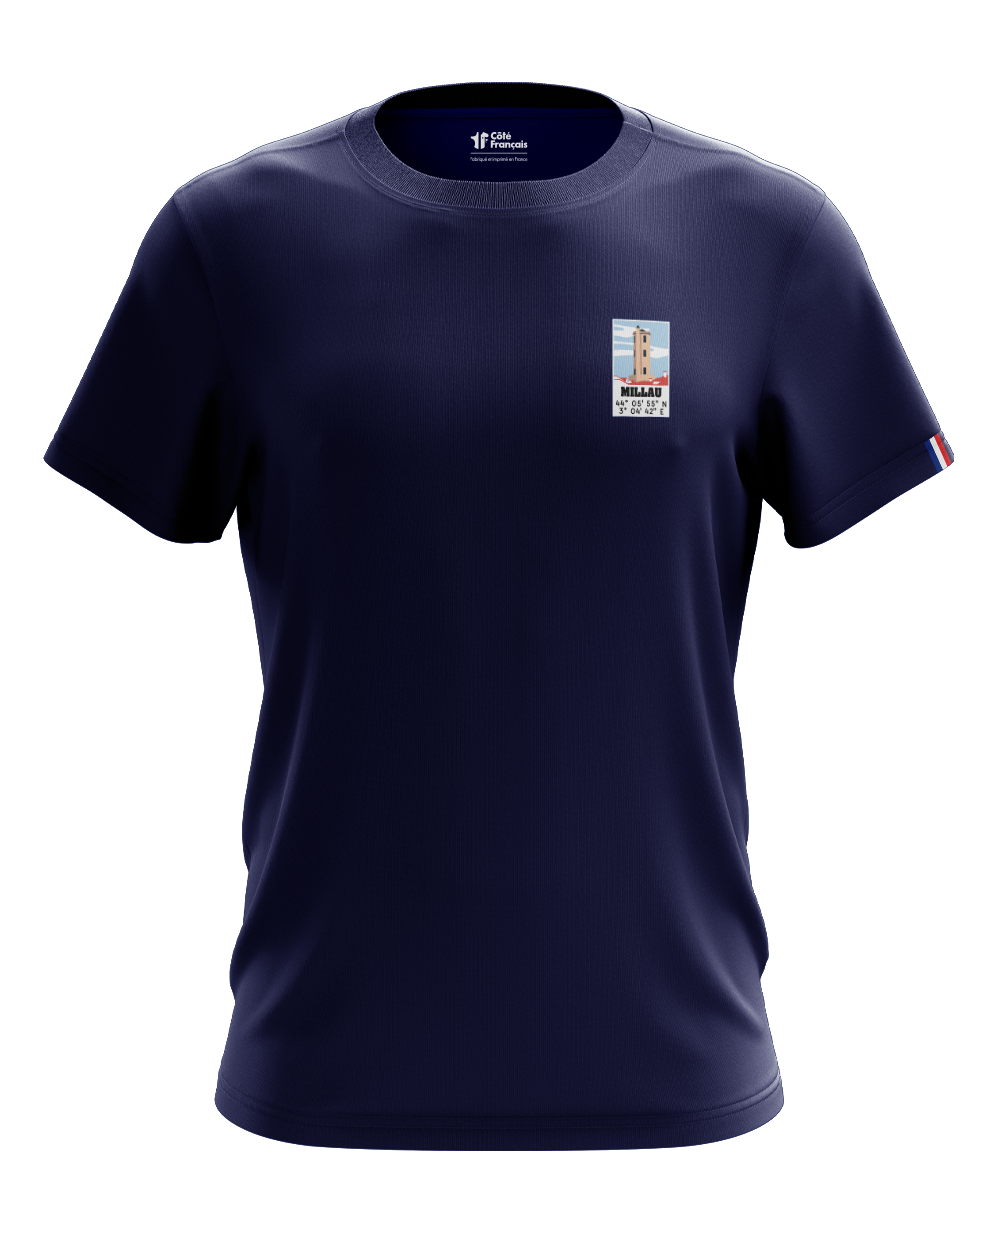 T-Shirt "Ville de Millau" - bleu marine